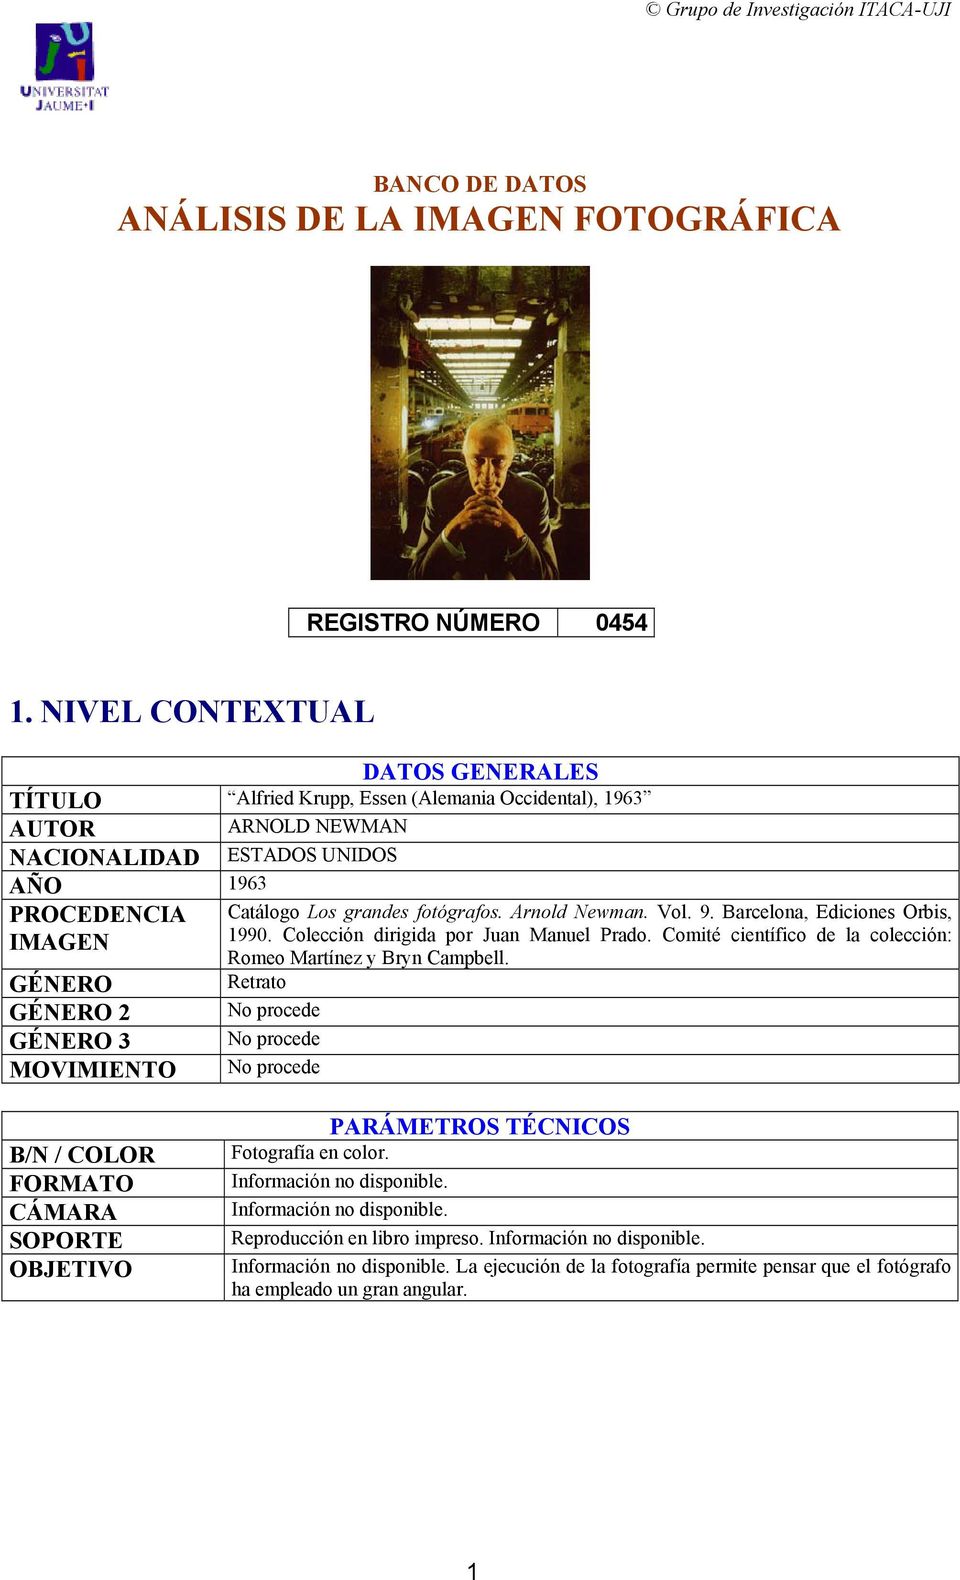 Arnold Newman. Vol. 9. Barcelona, Ediciones Orbis, IMAGEN 1990. Colección dirigida por Juan Manuel Prado. Comité científico de la colección: Romeo Martínez y Bryn Campbell.